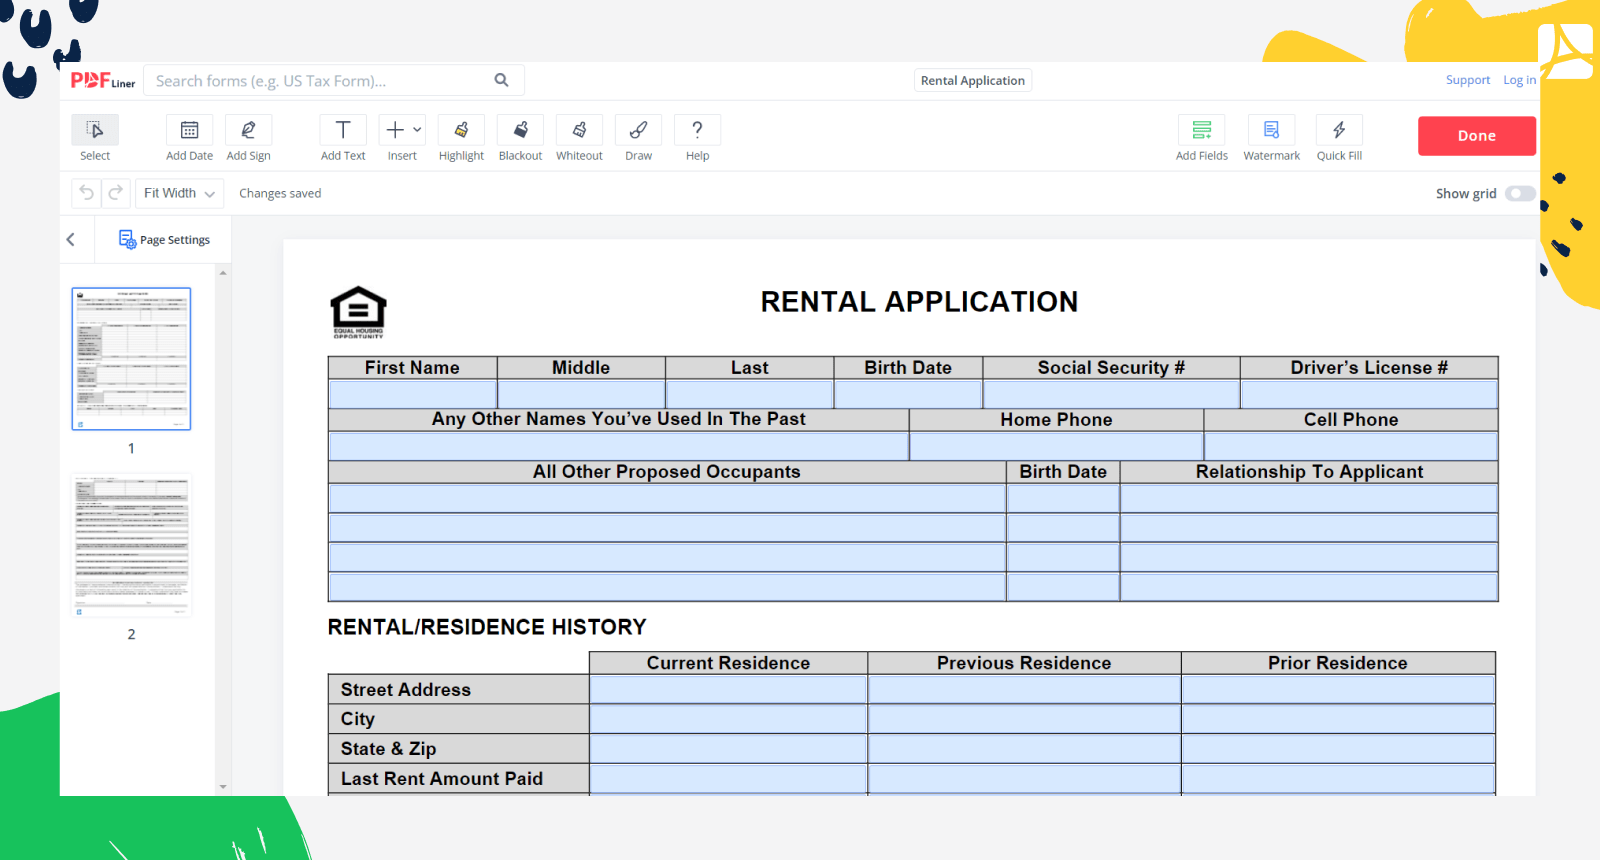 Rental Application Form on PDFLiner